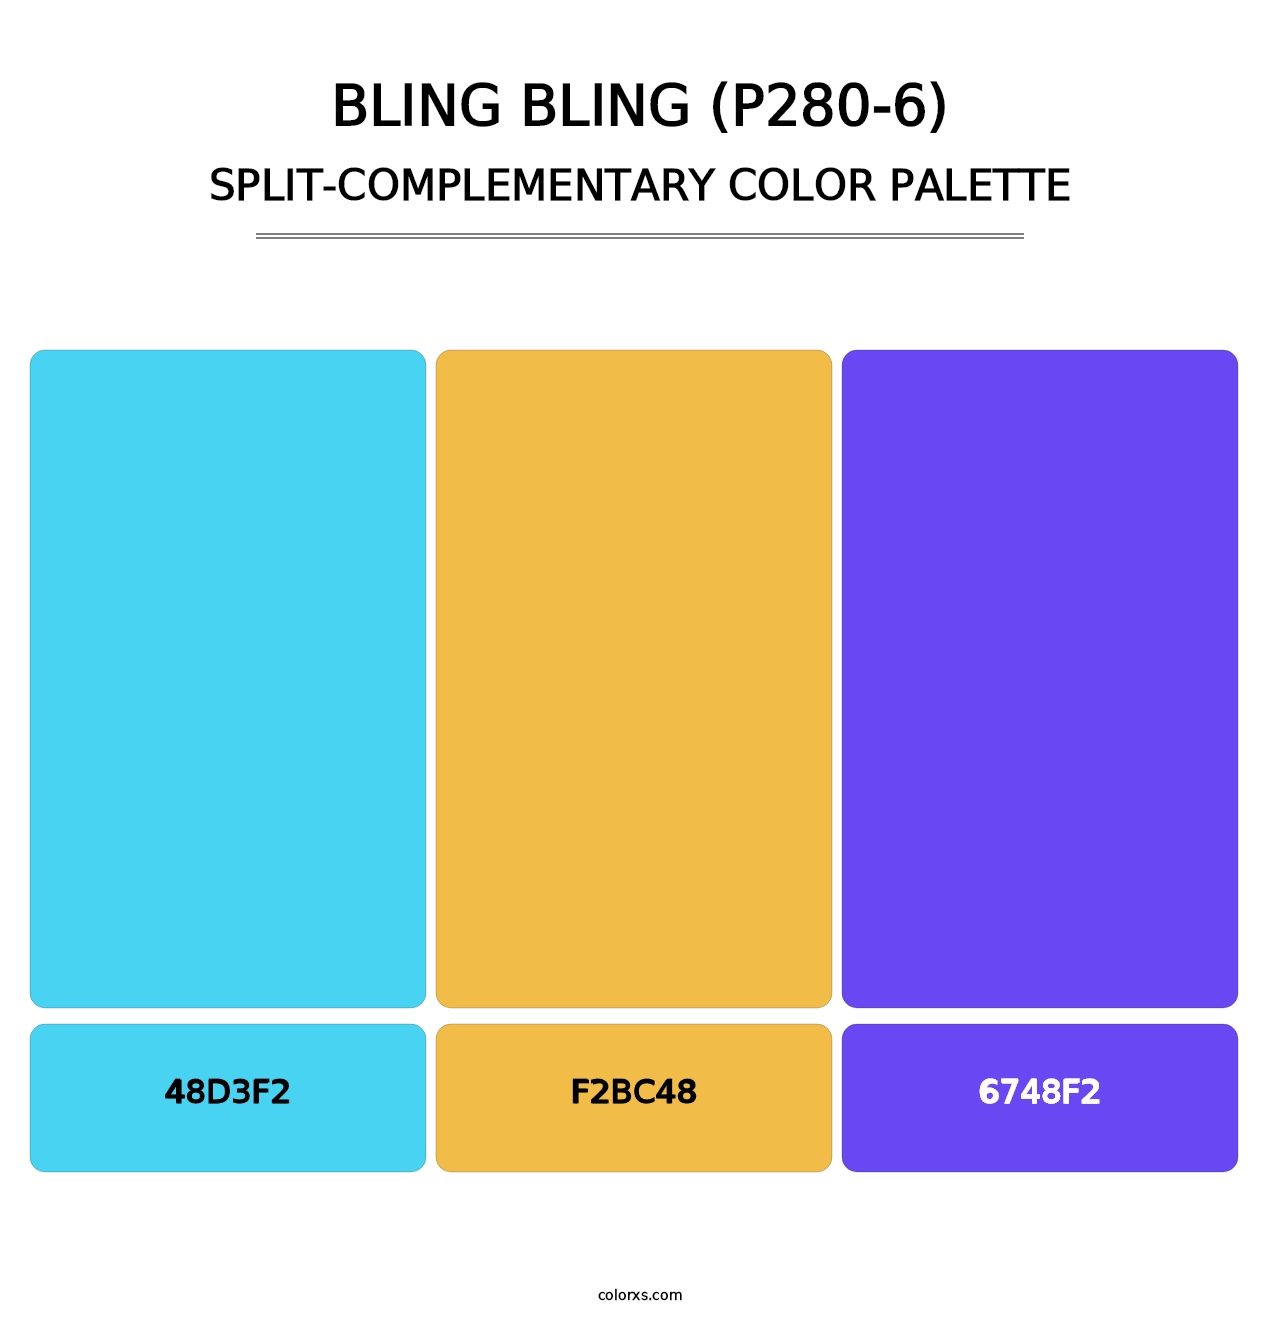 Bling Bling (P280-6) - Split-Complementary Color Palette